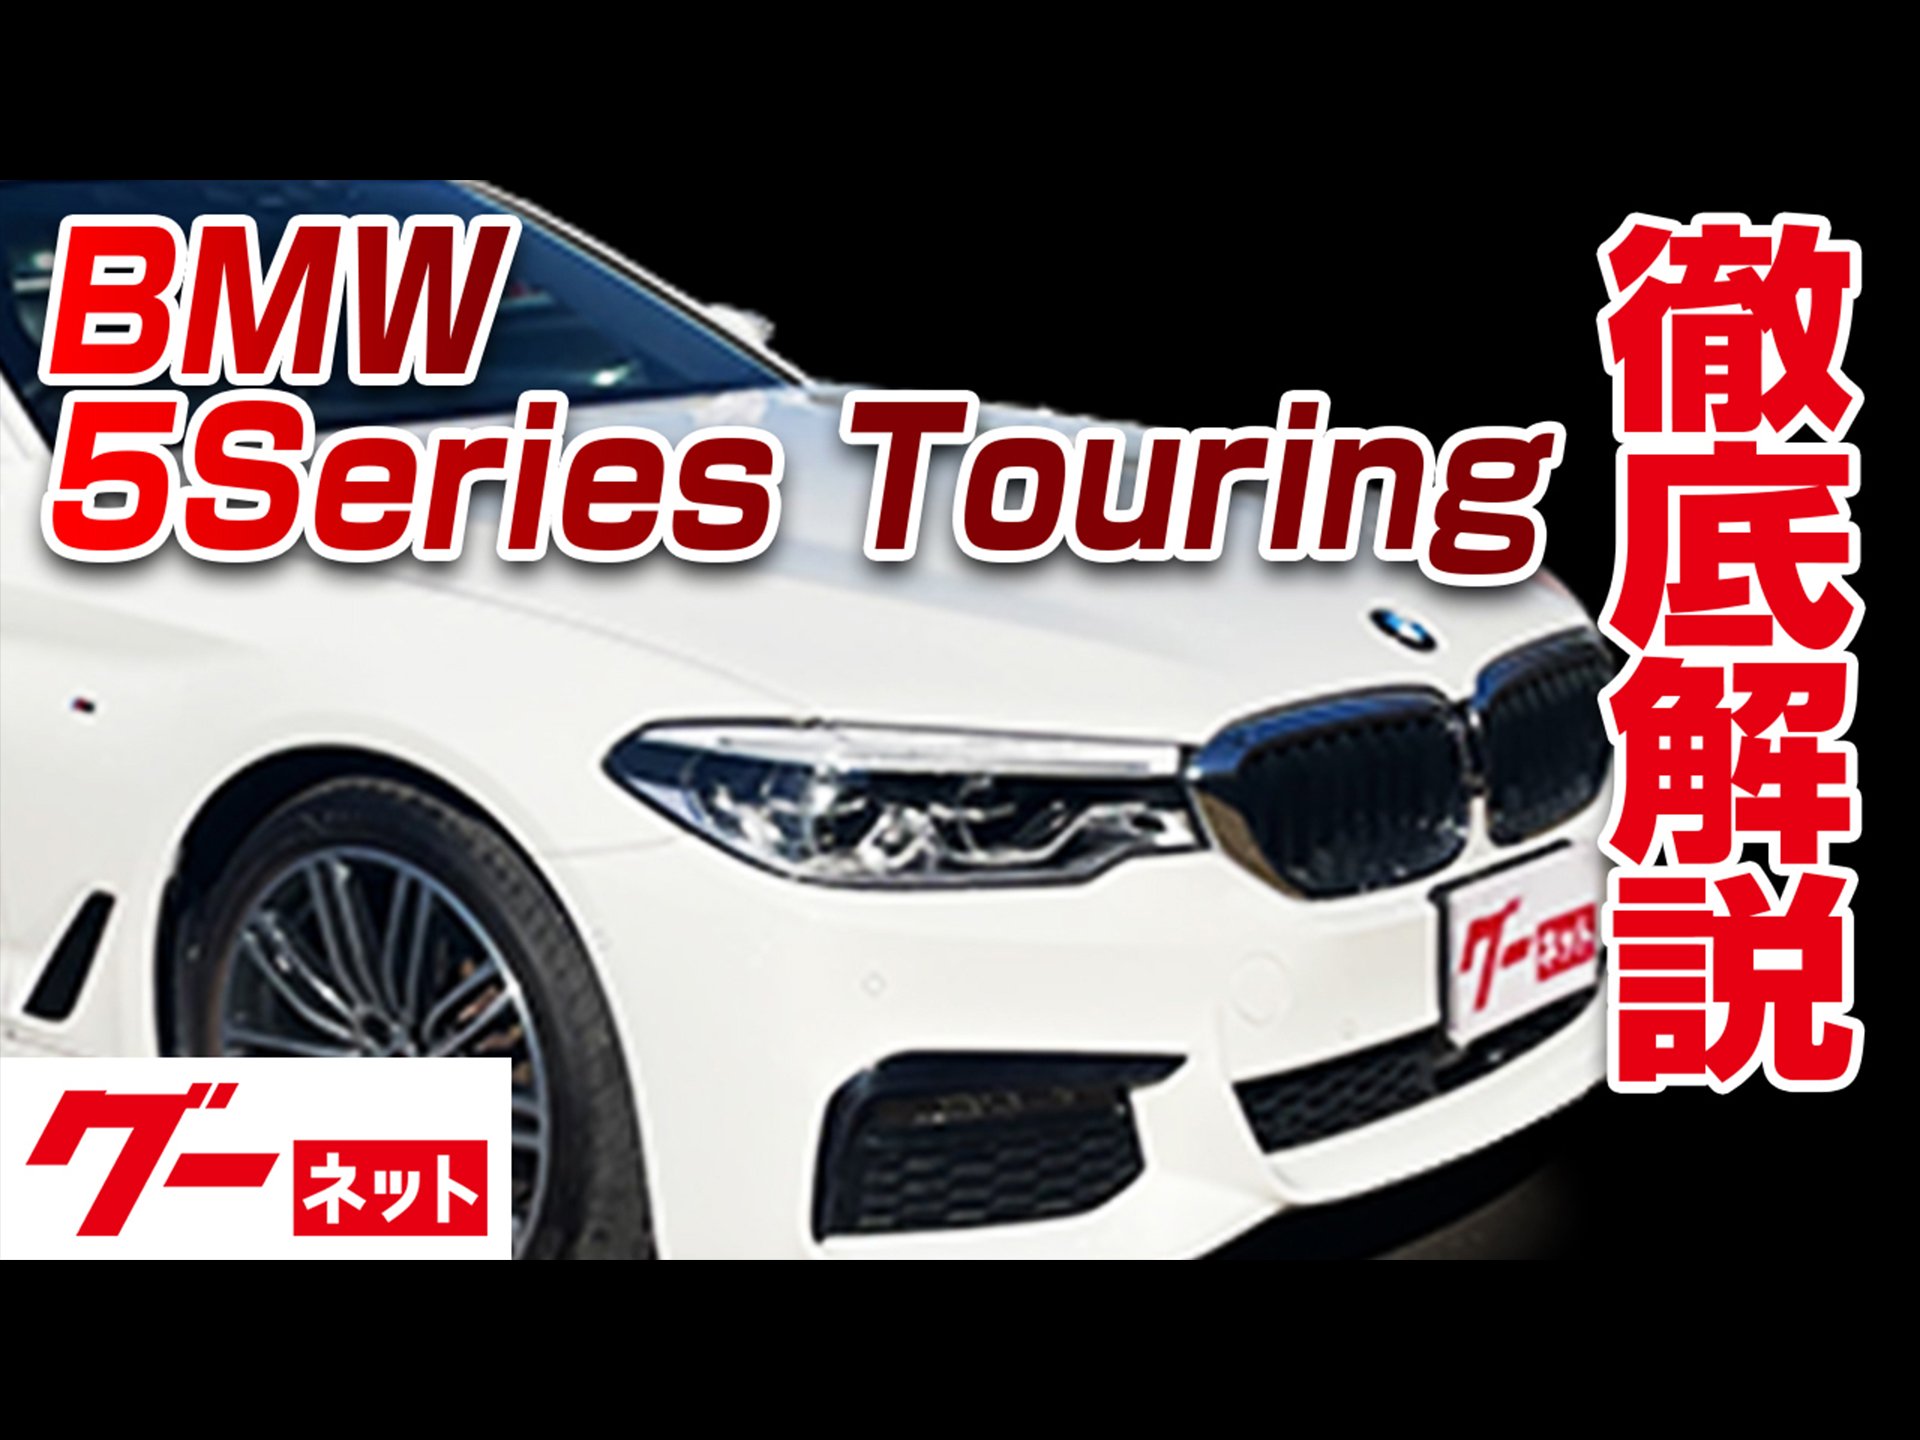 【BMW 5シリーズツーリング】グーネット動画カタログ